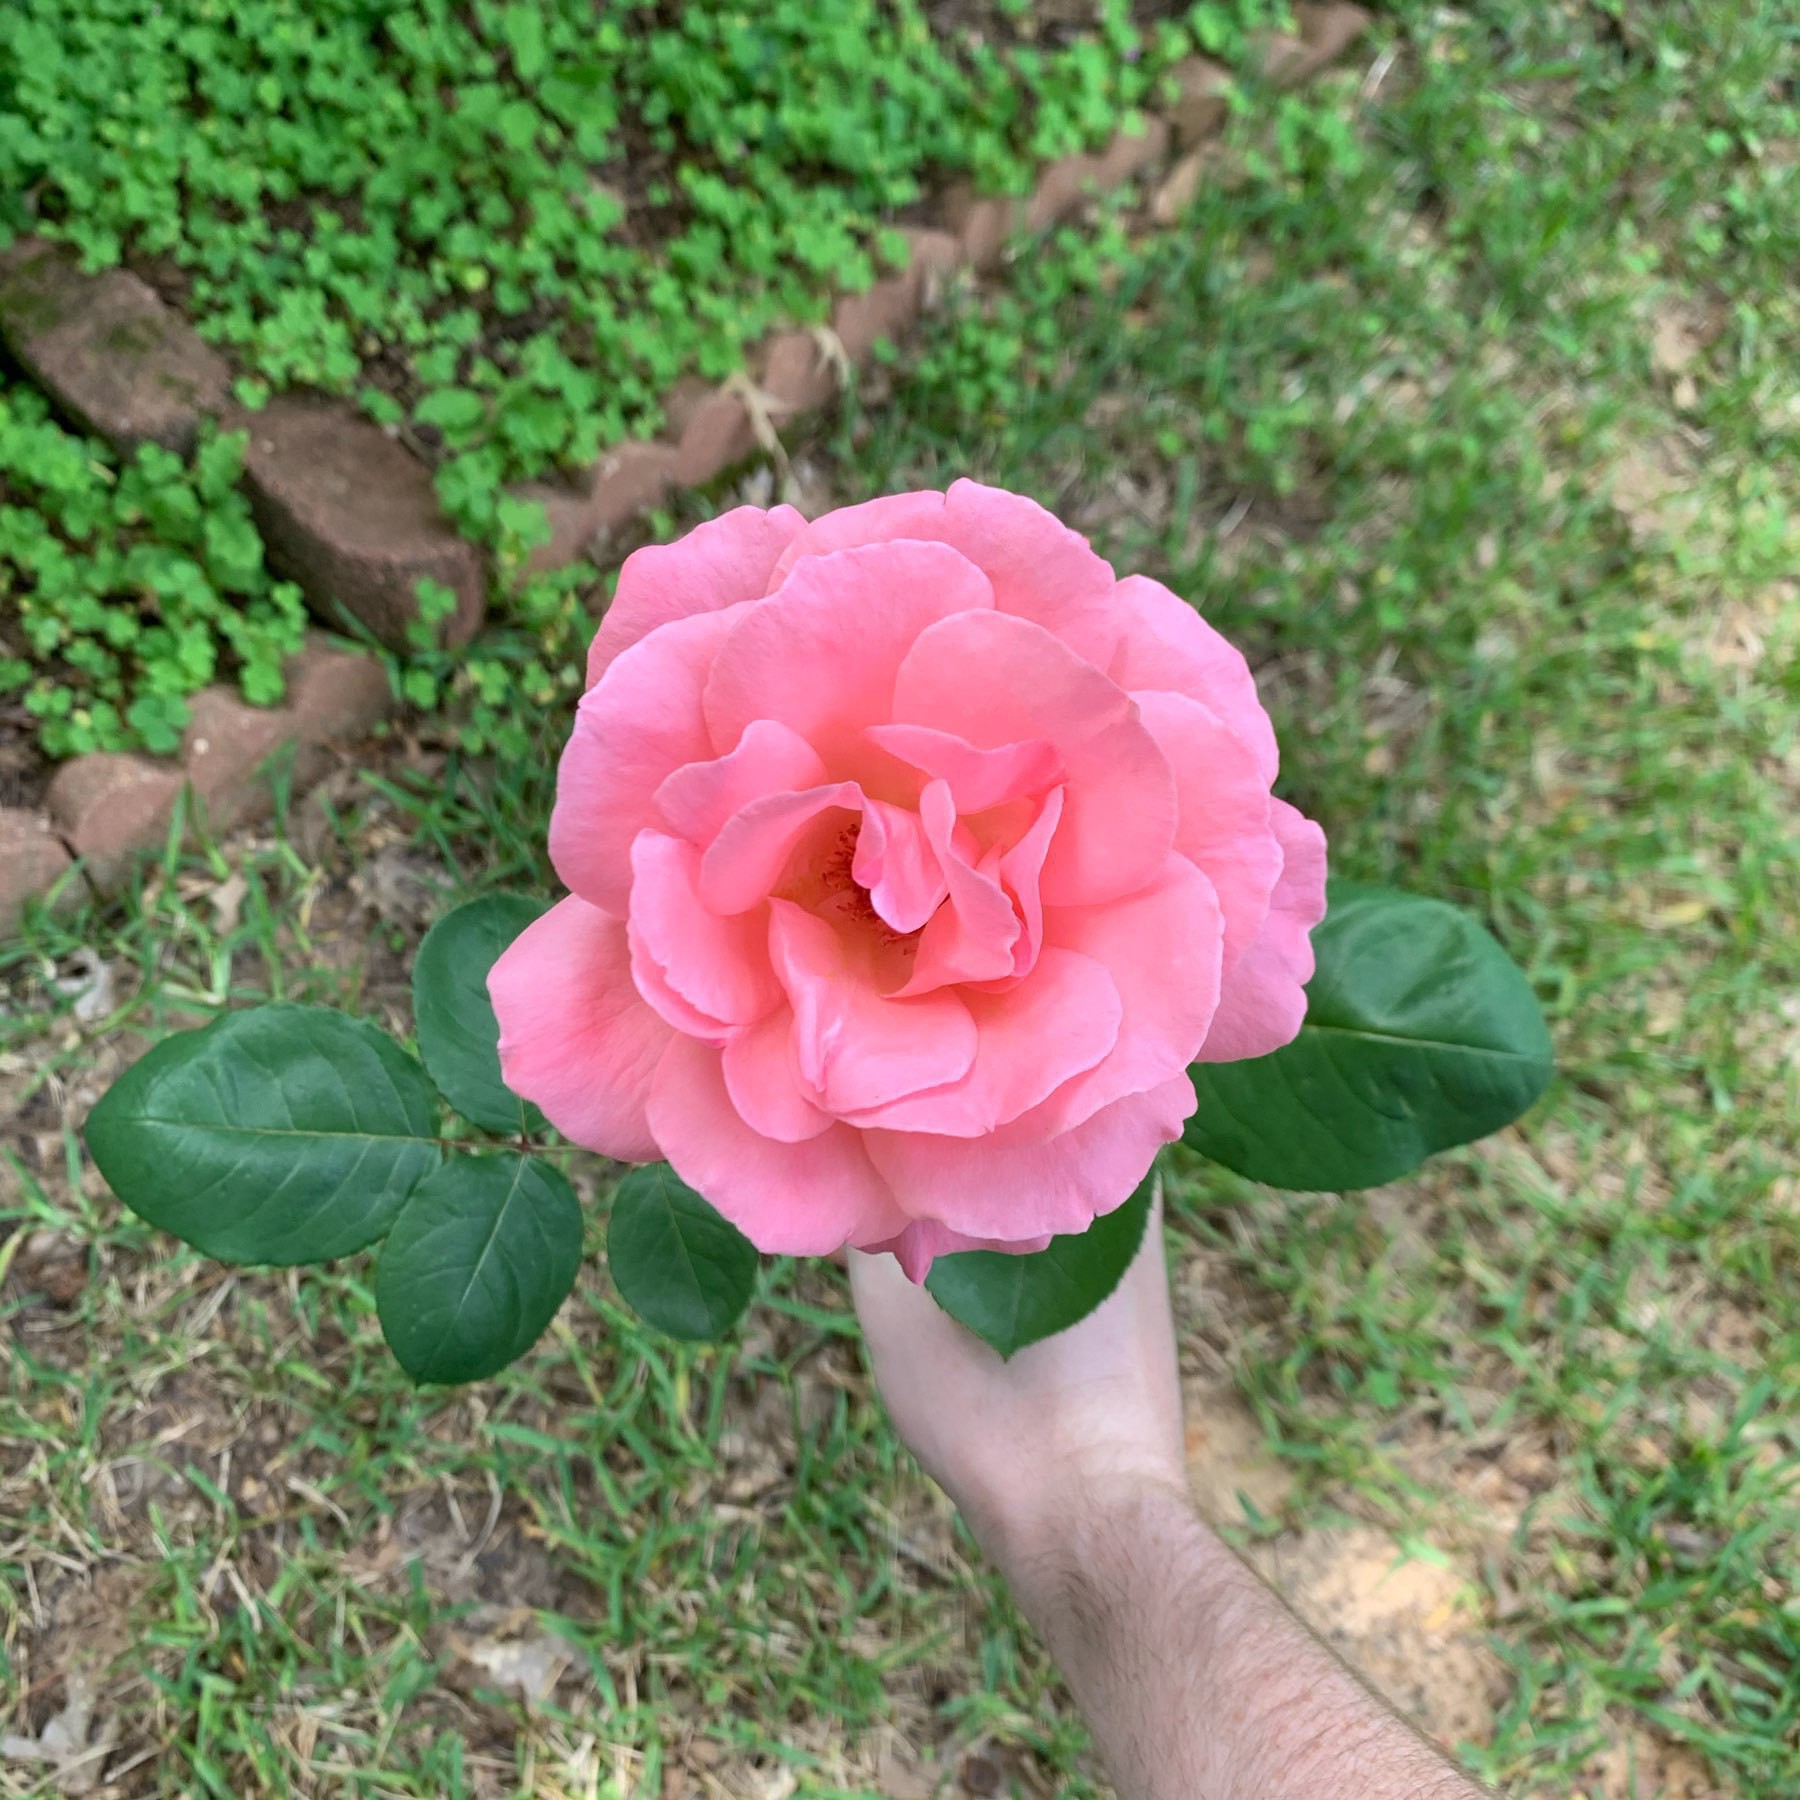 Fresh cut rose